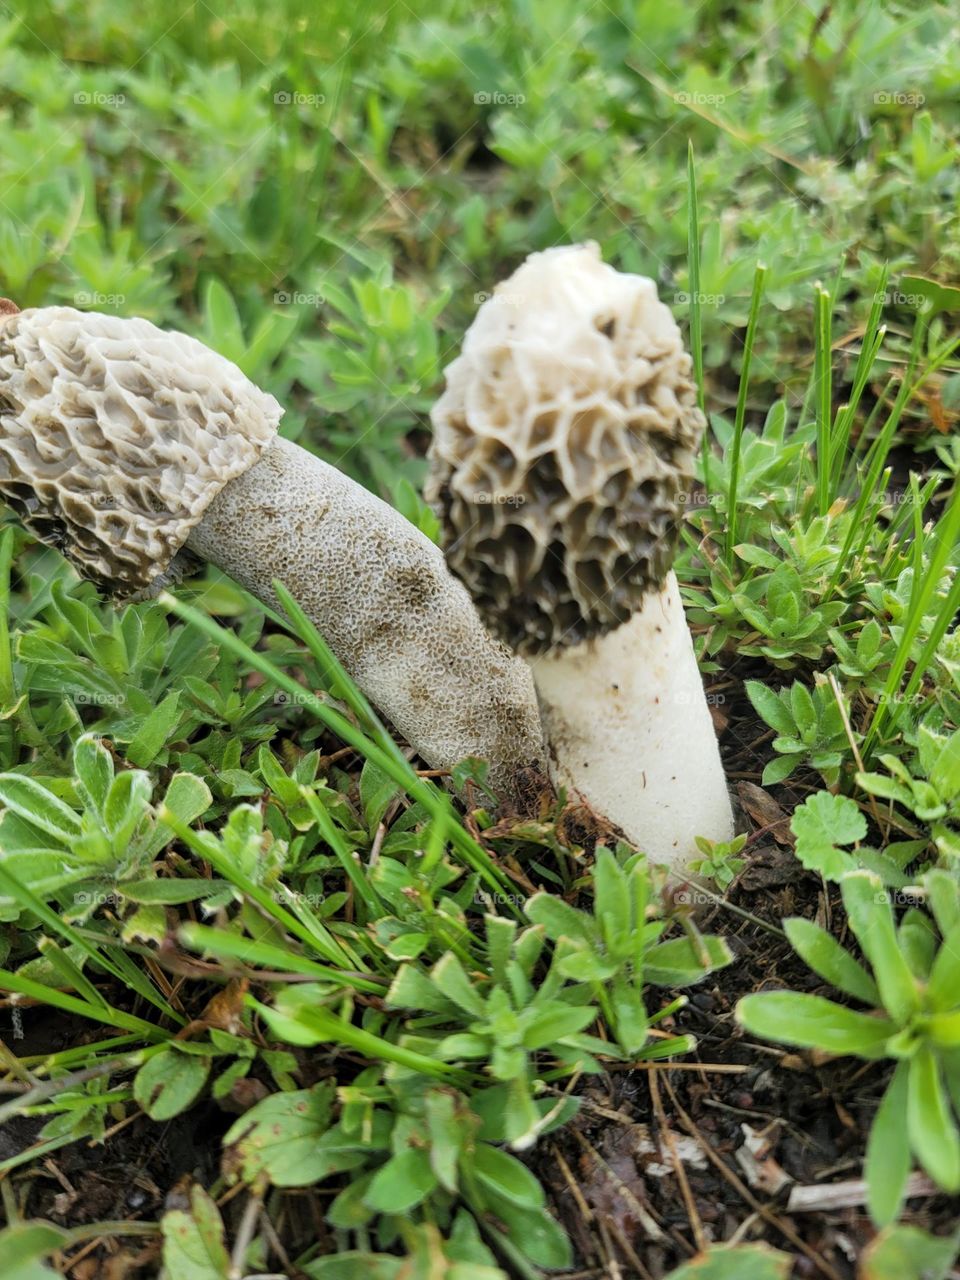 Two phallic fungi in the grass